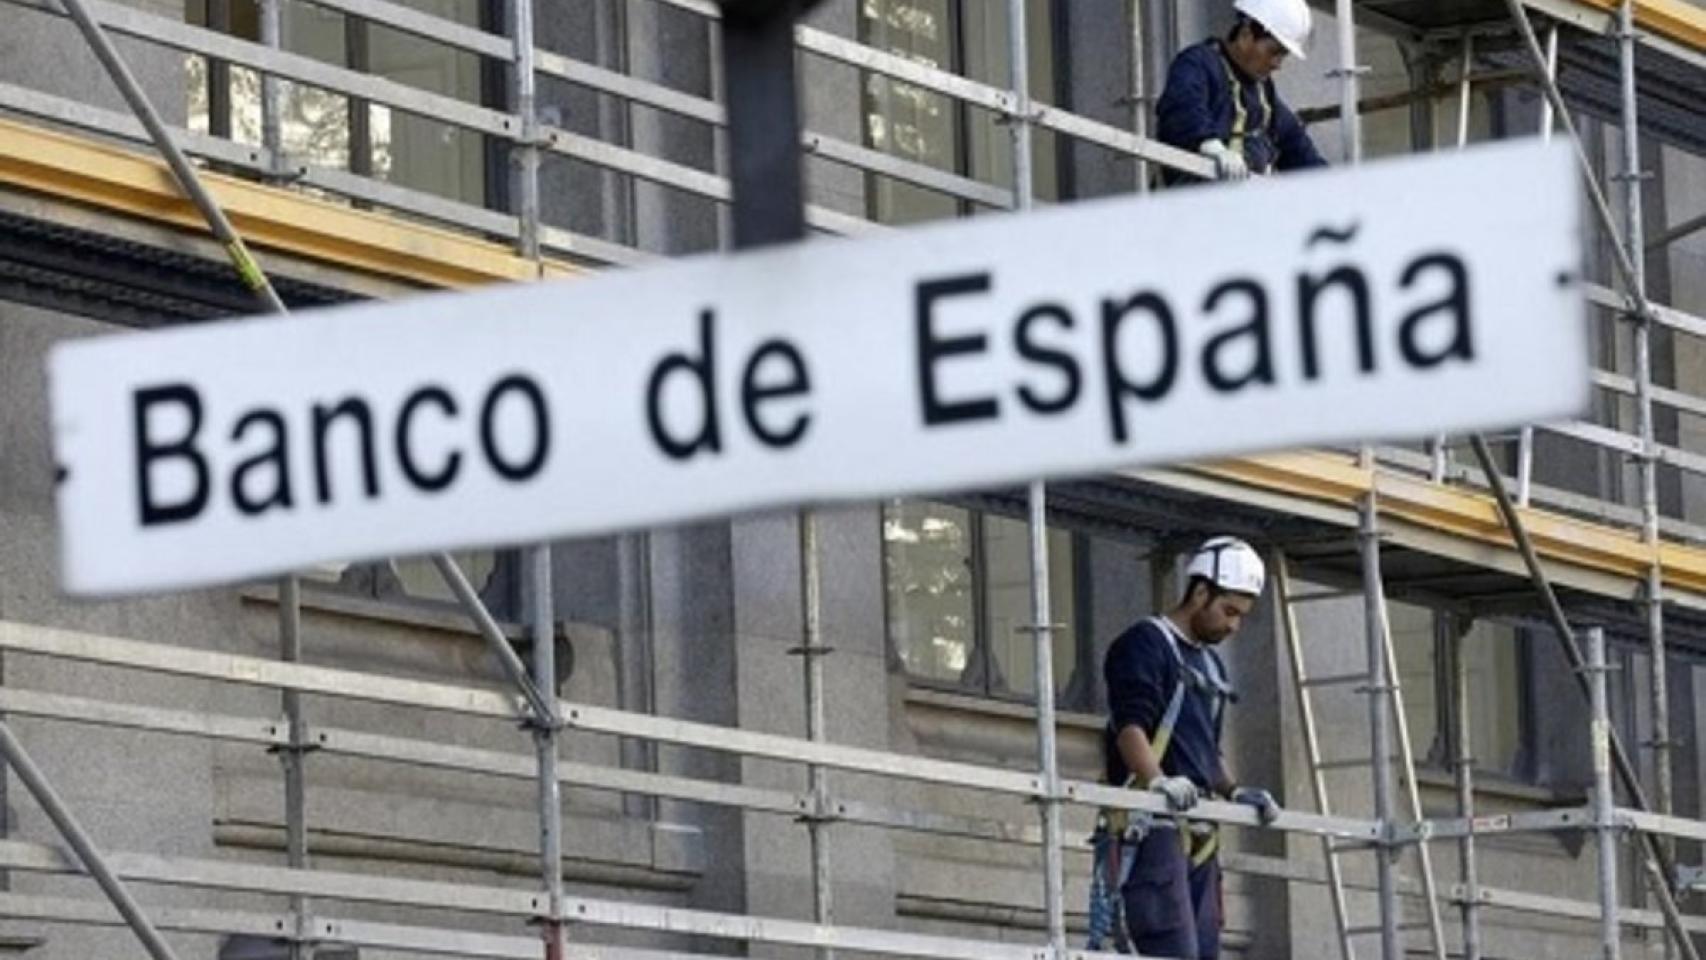 El PIB creció un 0,8% en el cuarto trimestre pese a la incertidumbre catalana, según Banco de España